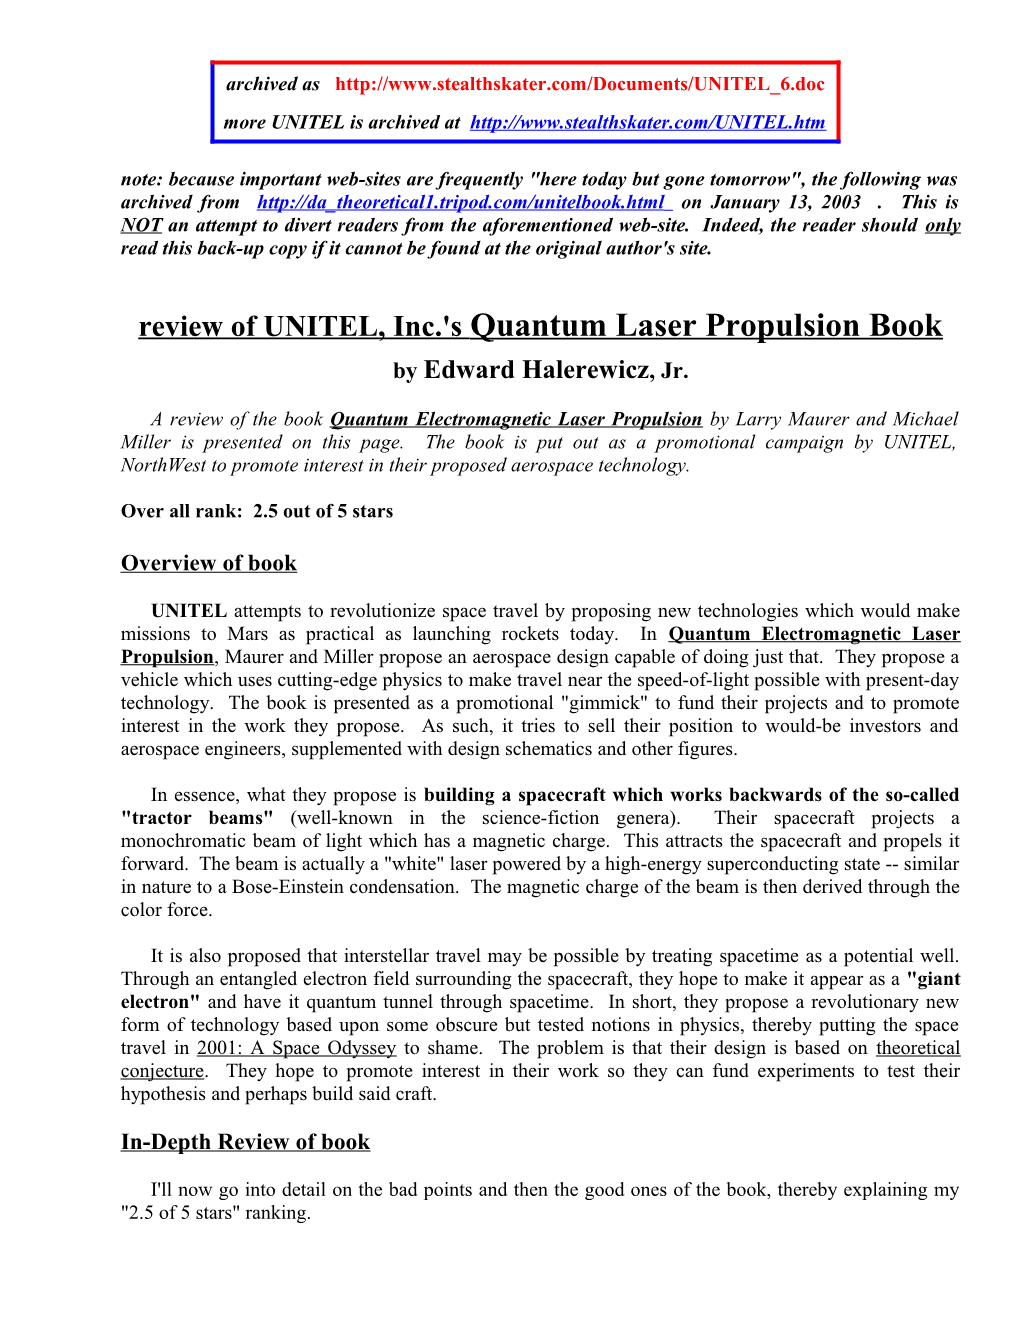 Review of UNITEL, Inc.'S Quantum Laser Propulsion Book